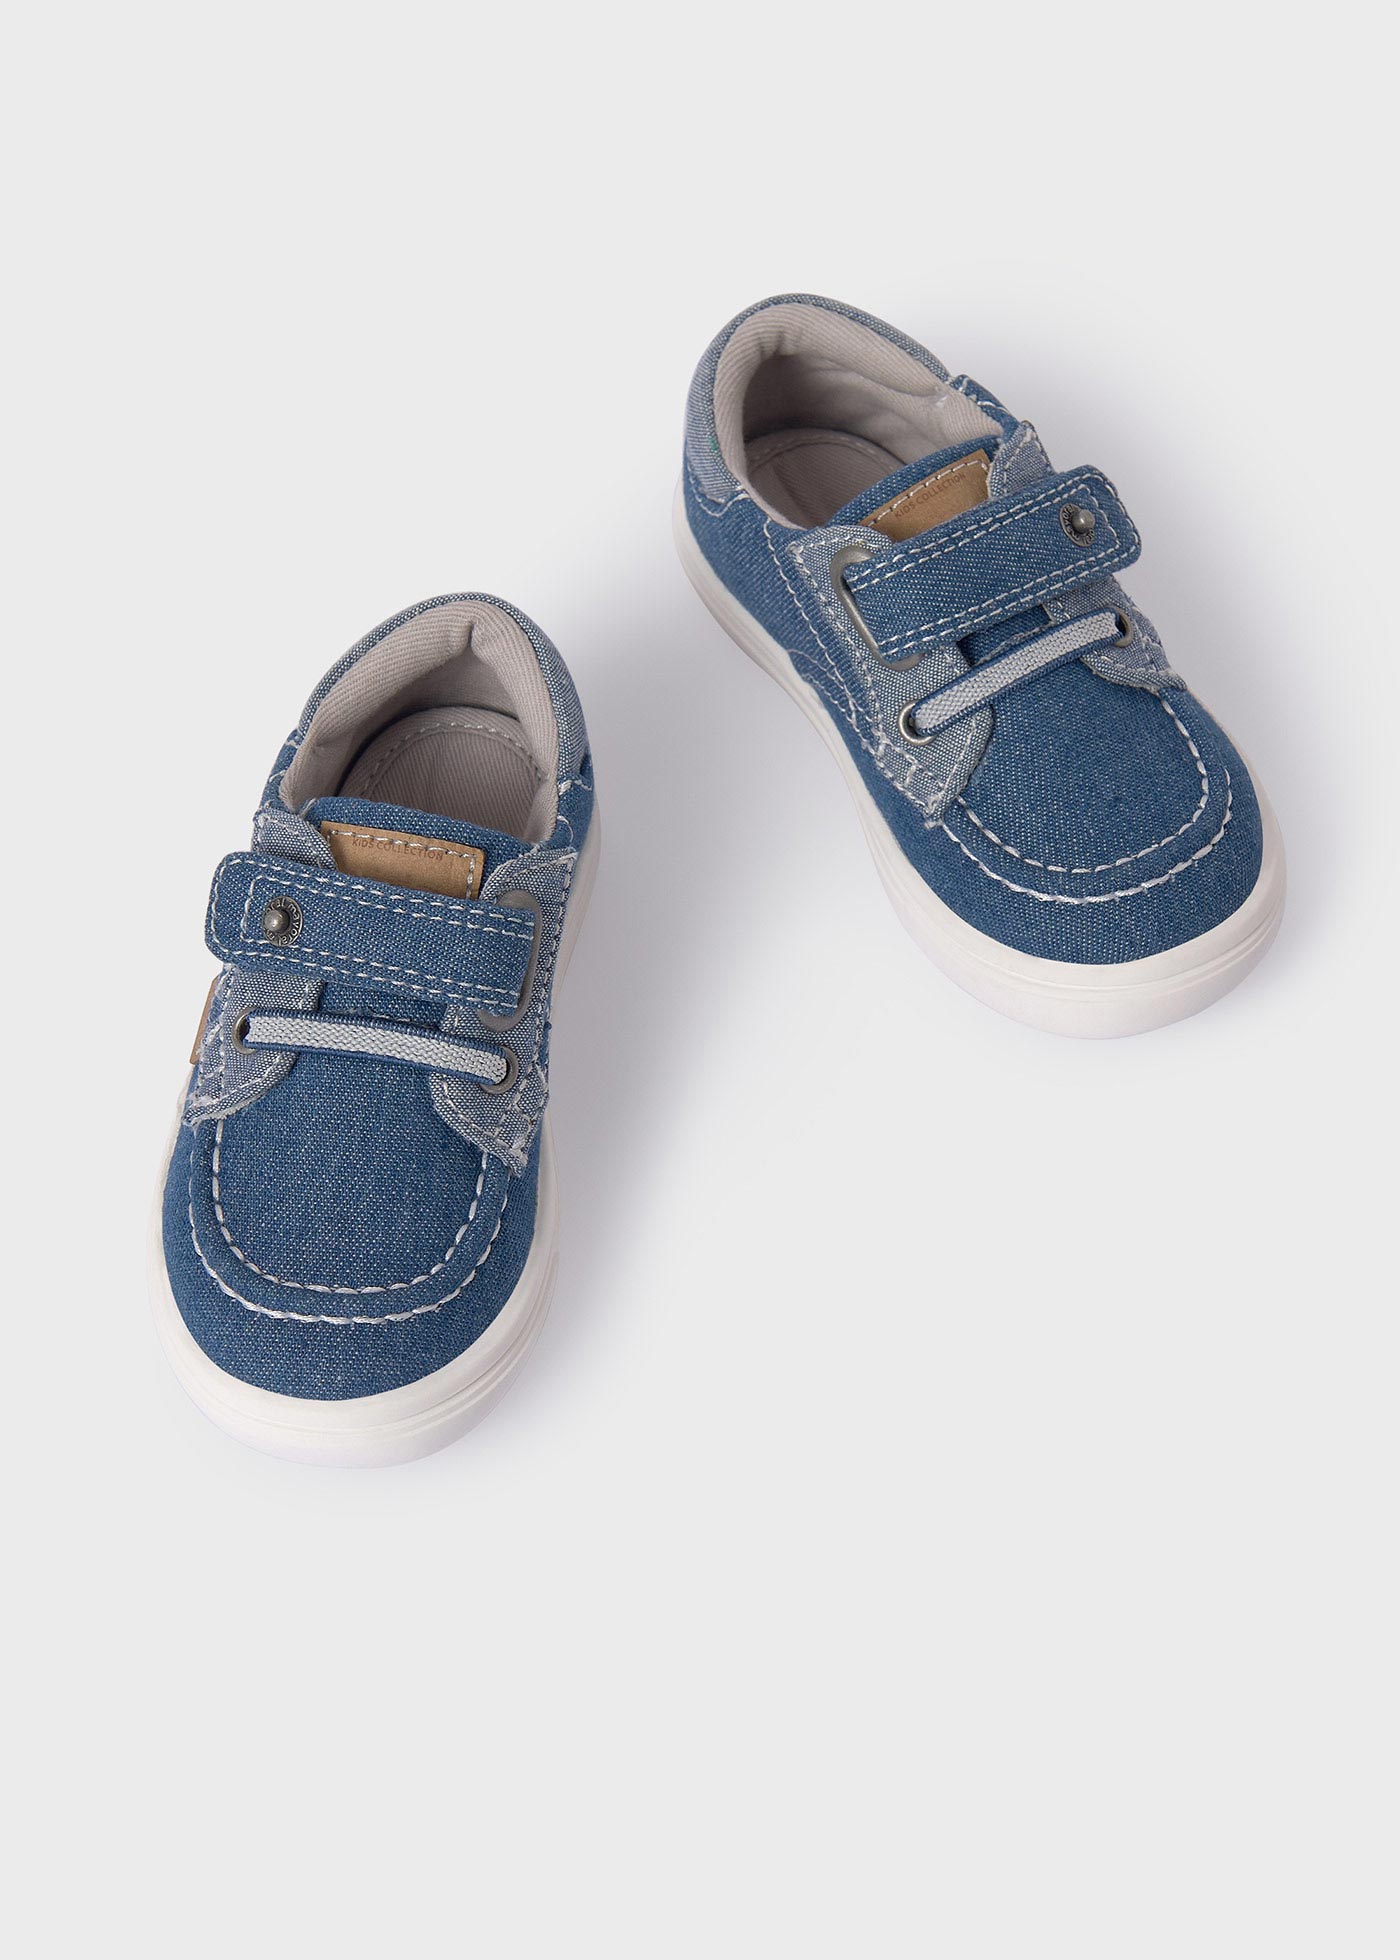 Schuhe im Nautikstil Baby